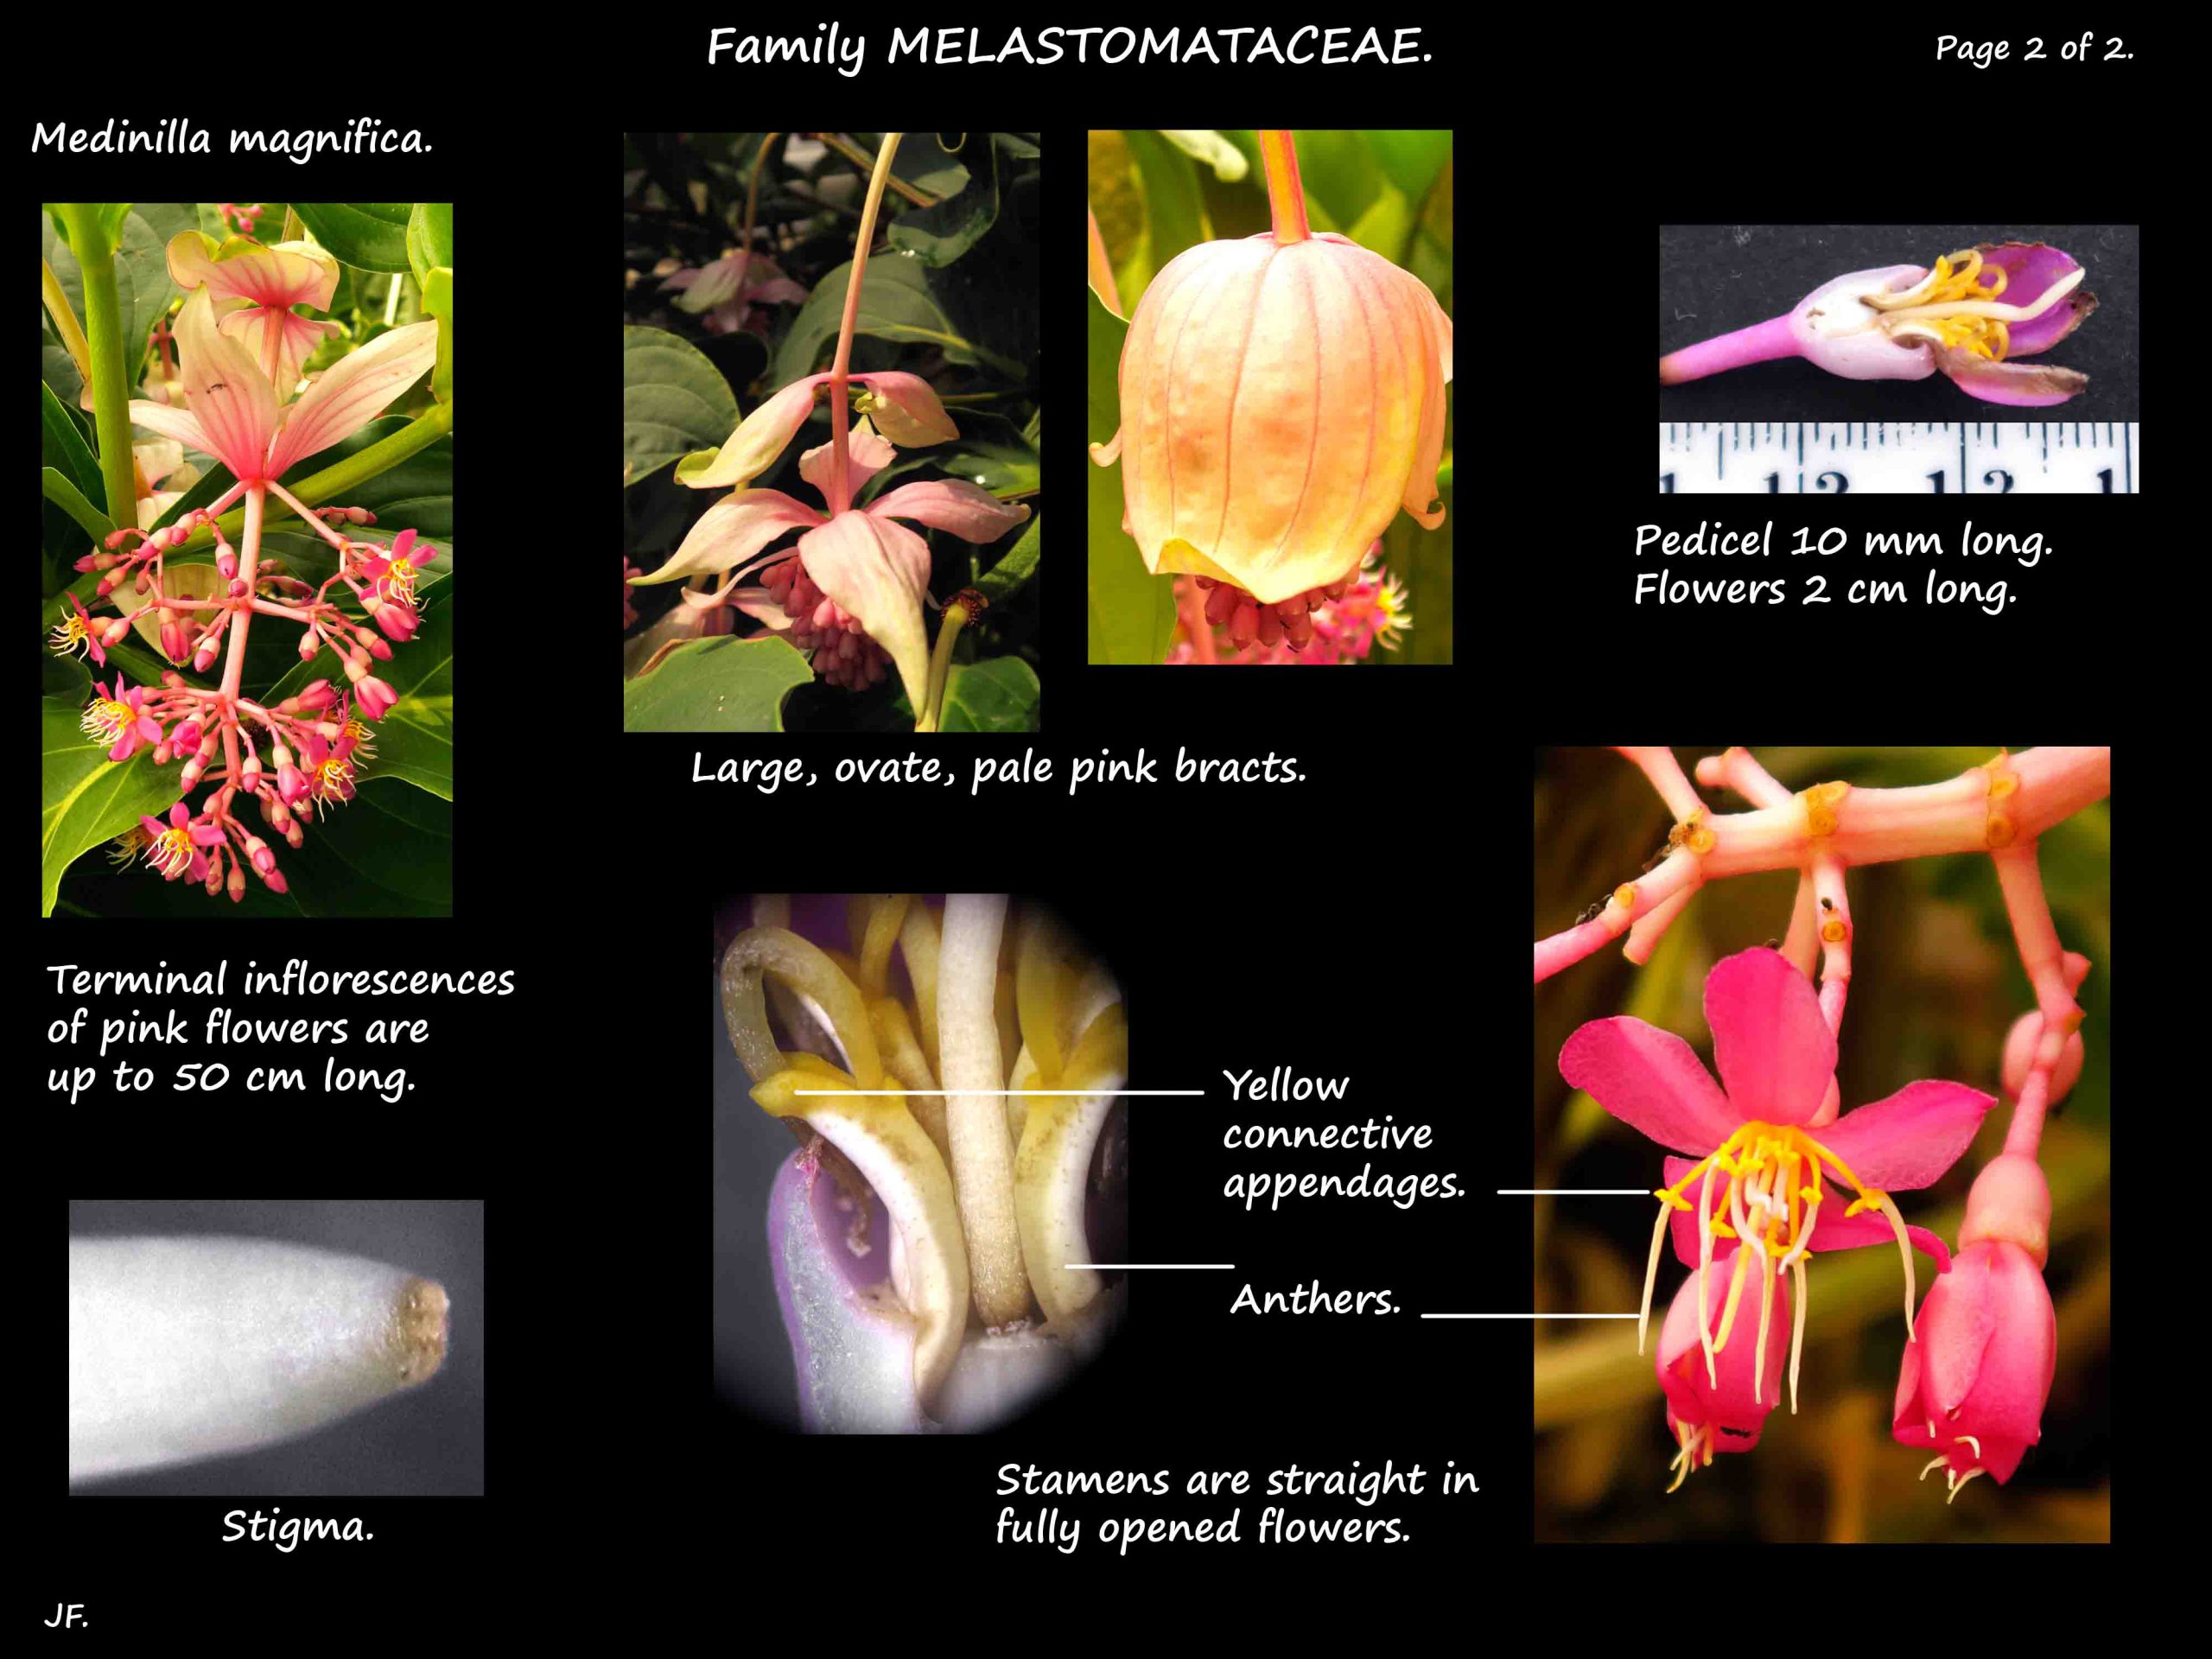 2 Medinilla magnifica flowers